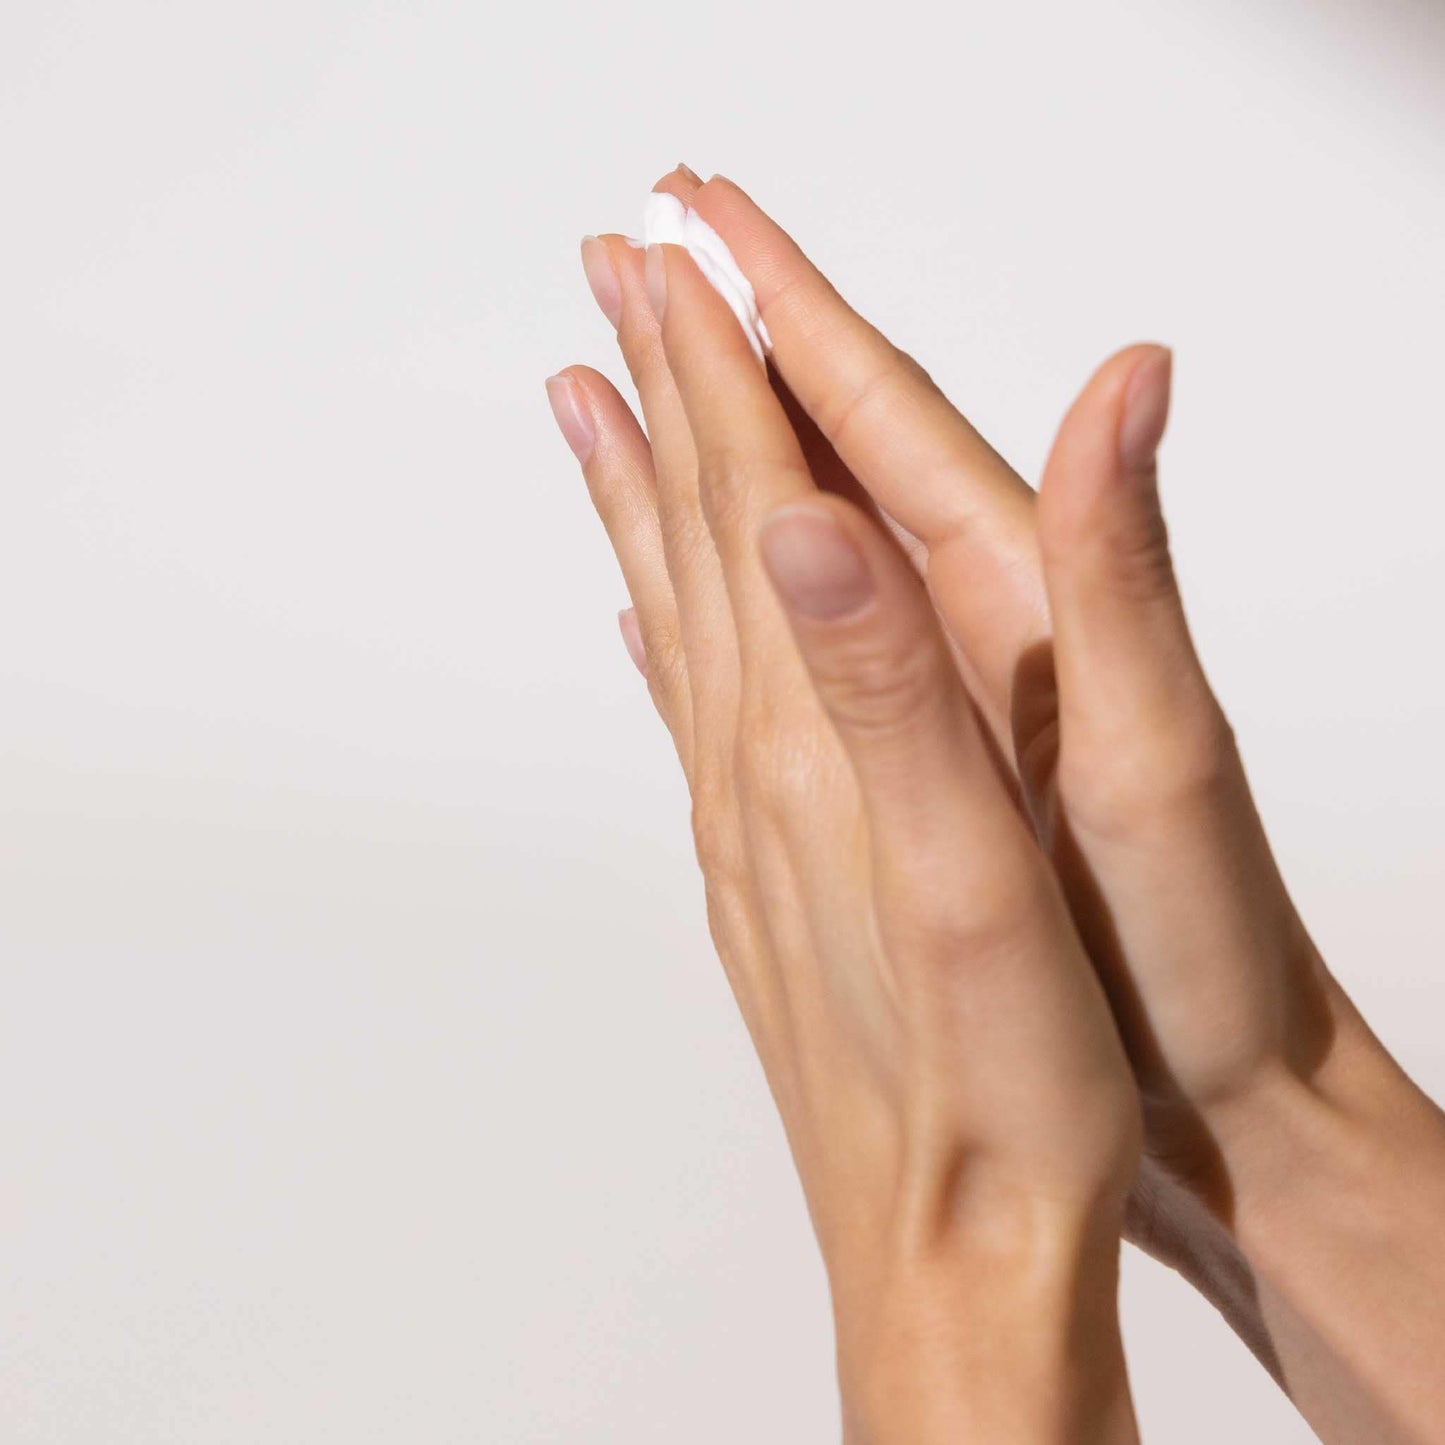 Hands with product in between fingertips